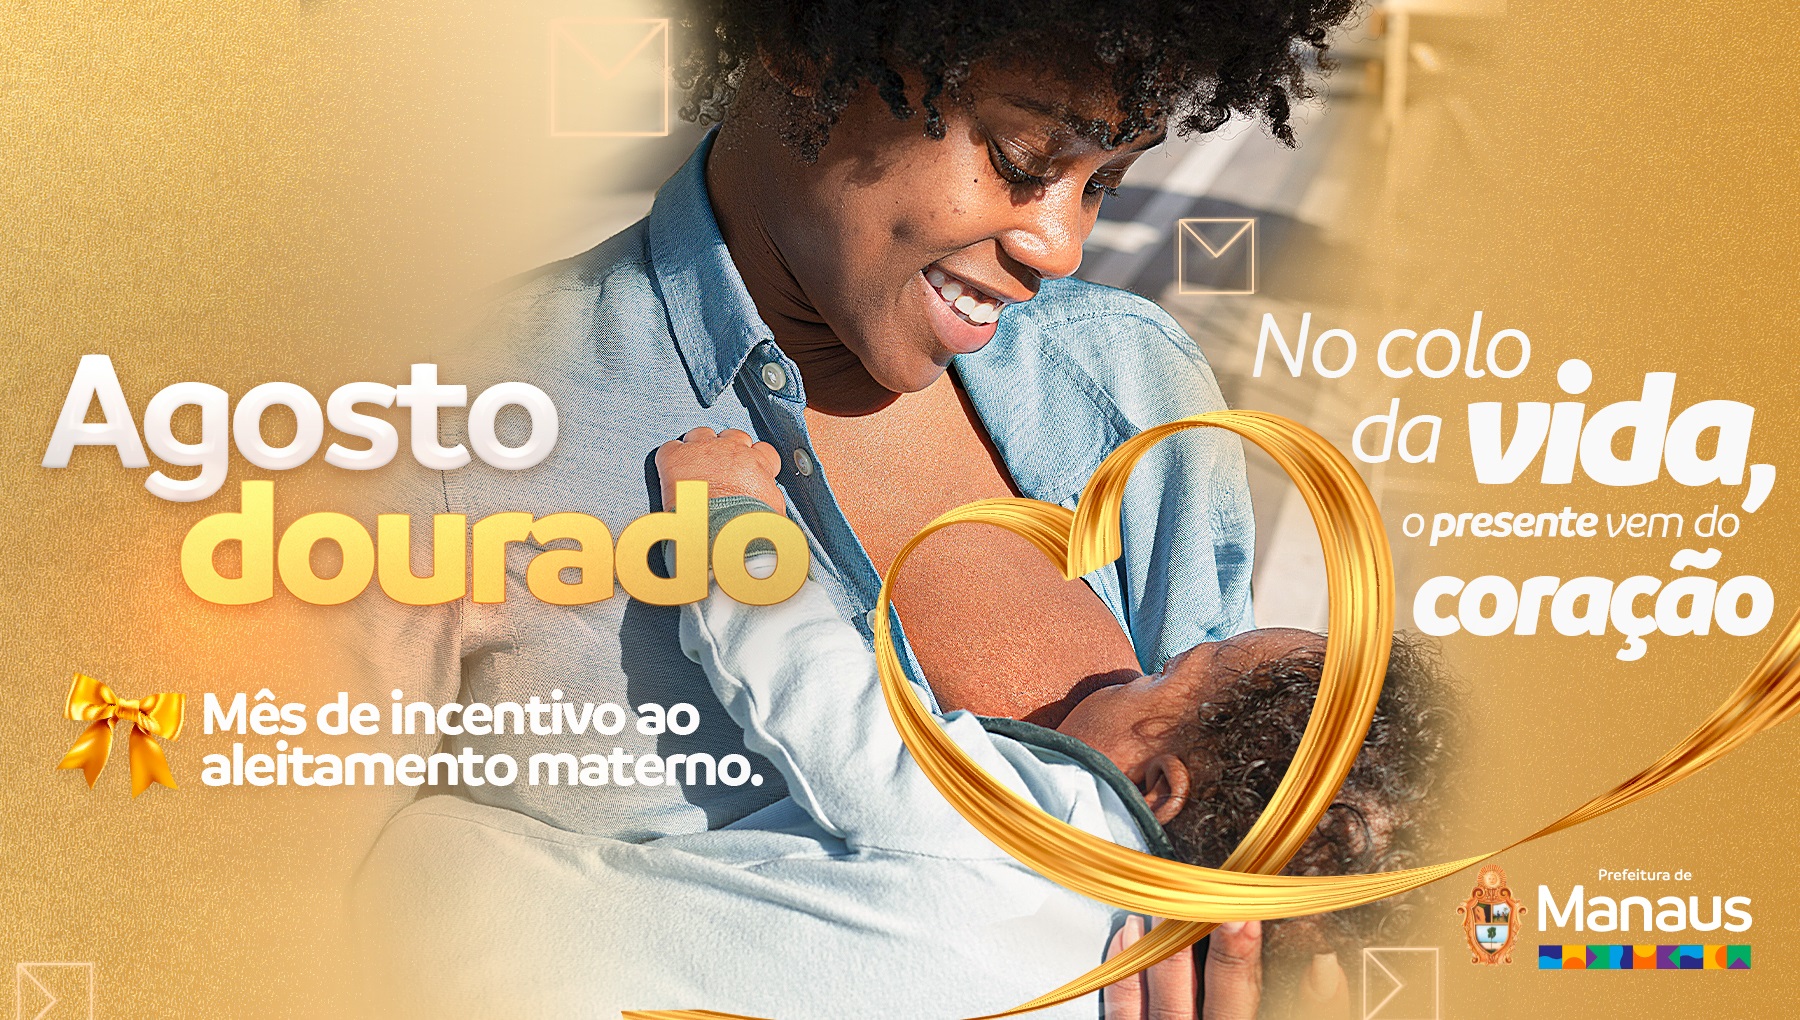 Agosto dourado: mês de incentivo ao aleitamento materno